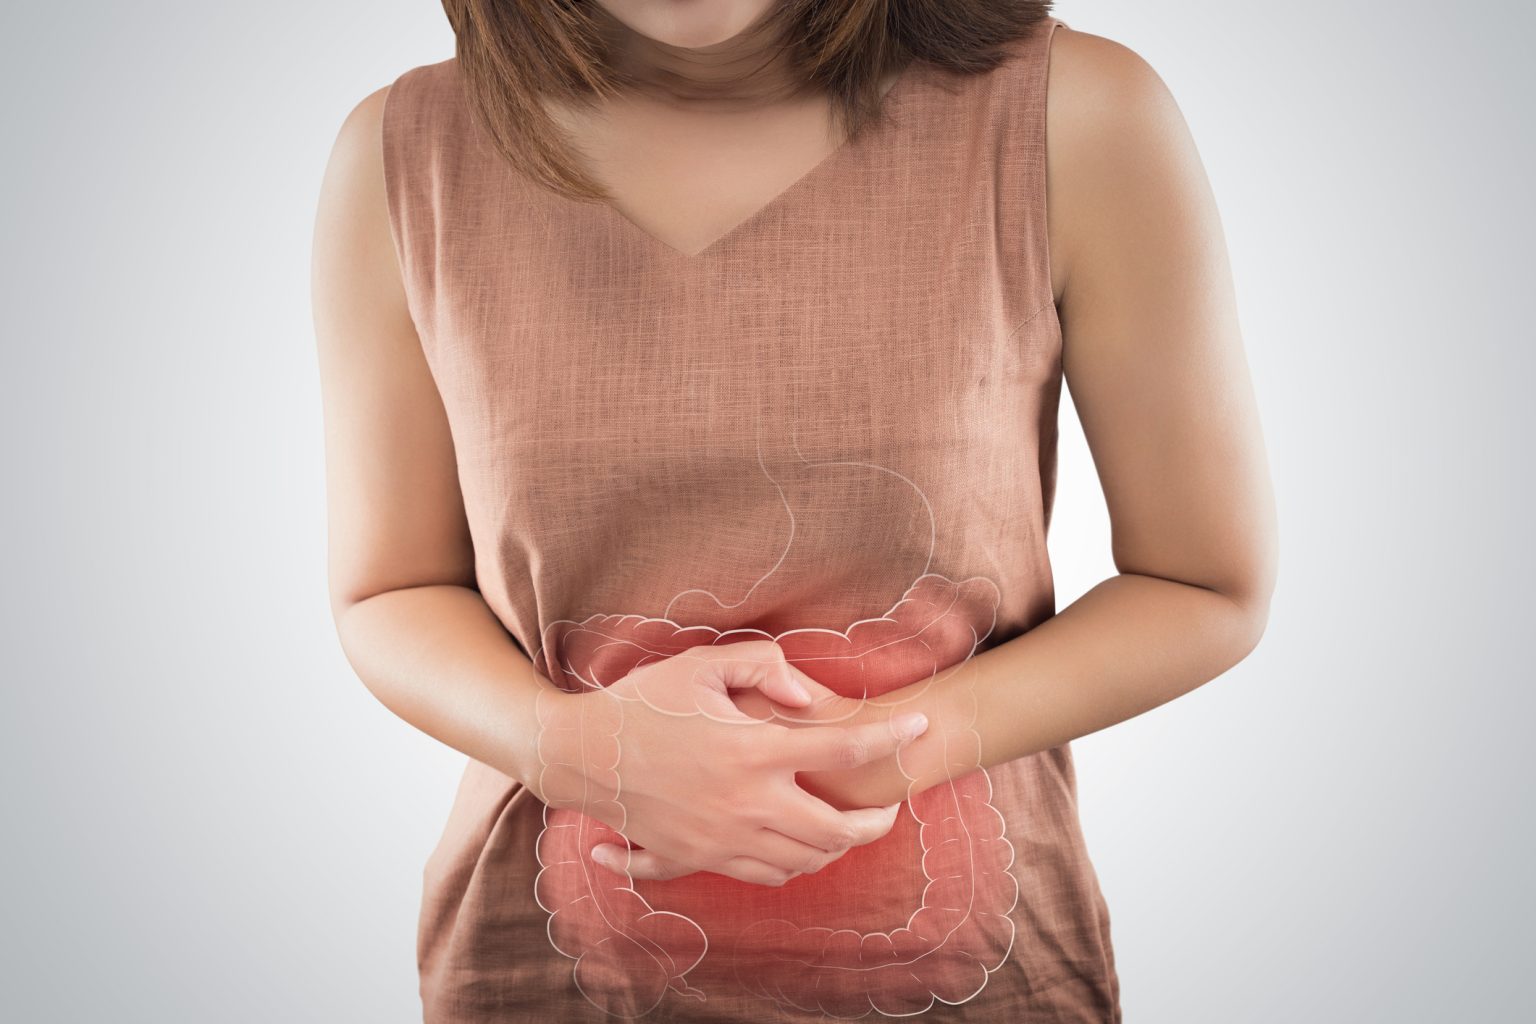 Pólipos en el colon: síntomas y tratamiento | Clínica San Pablo